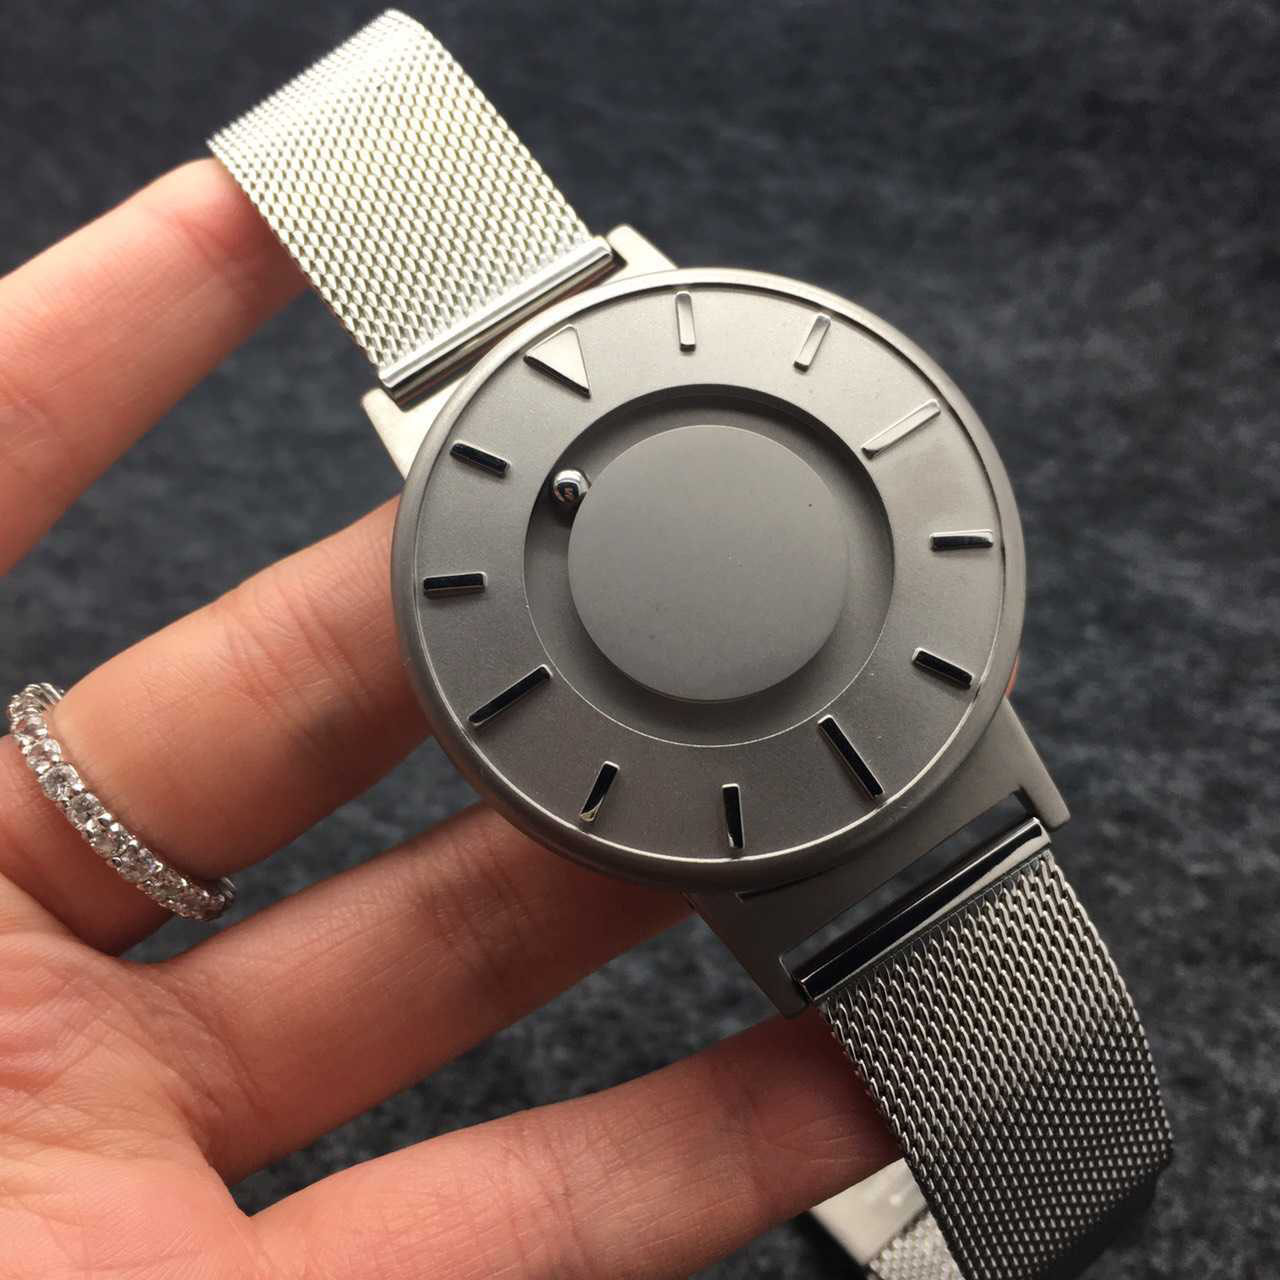 新品發布 潮人必備 Eone the Bradley 設計磁球觸覺腕錶